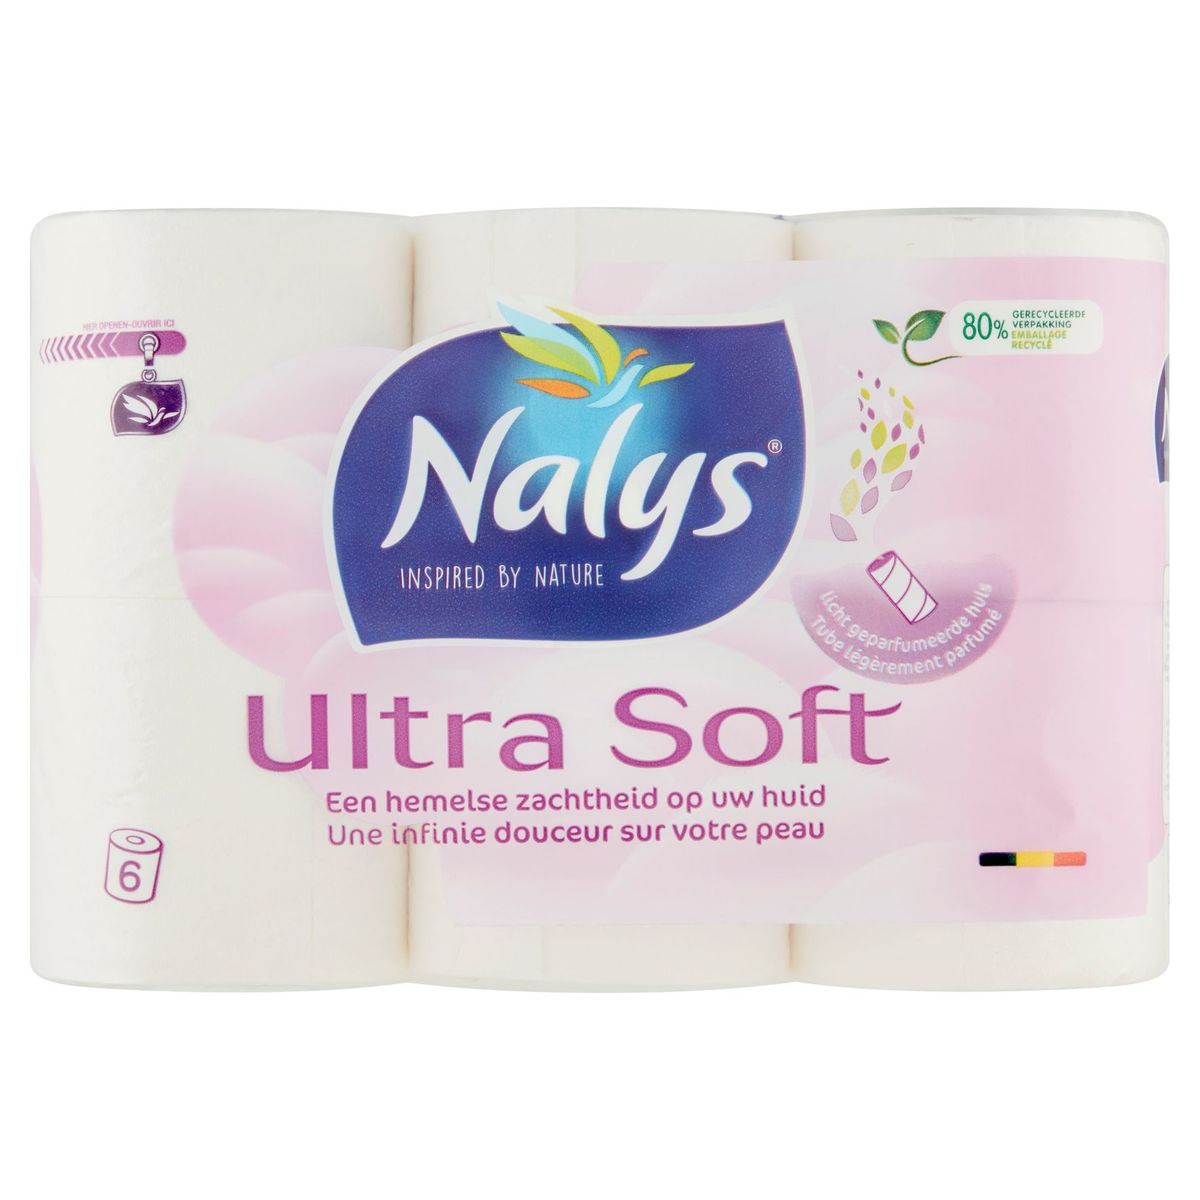 Nalys Ultra Soft Papier Toilette 2 Épaisseurs 6 Rouleaux